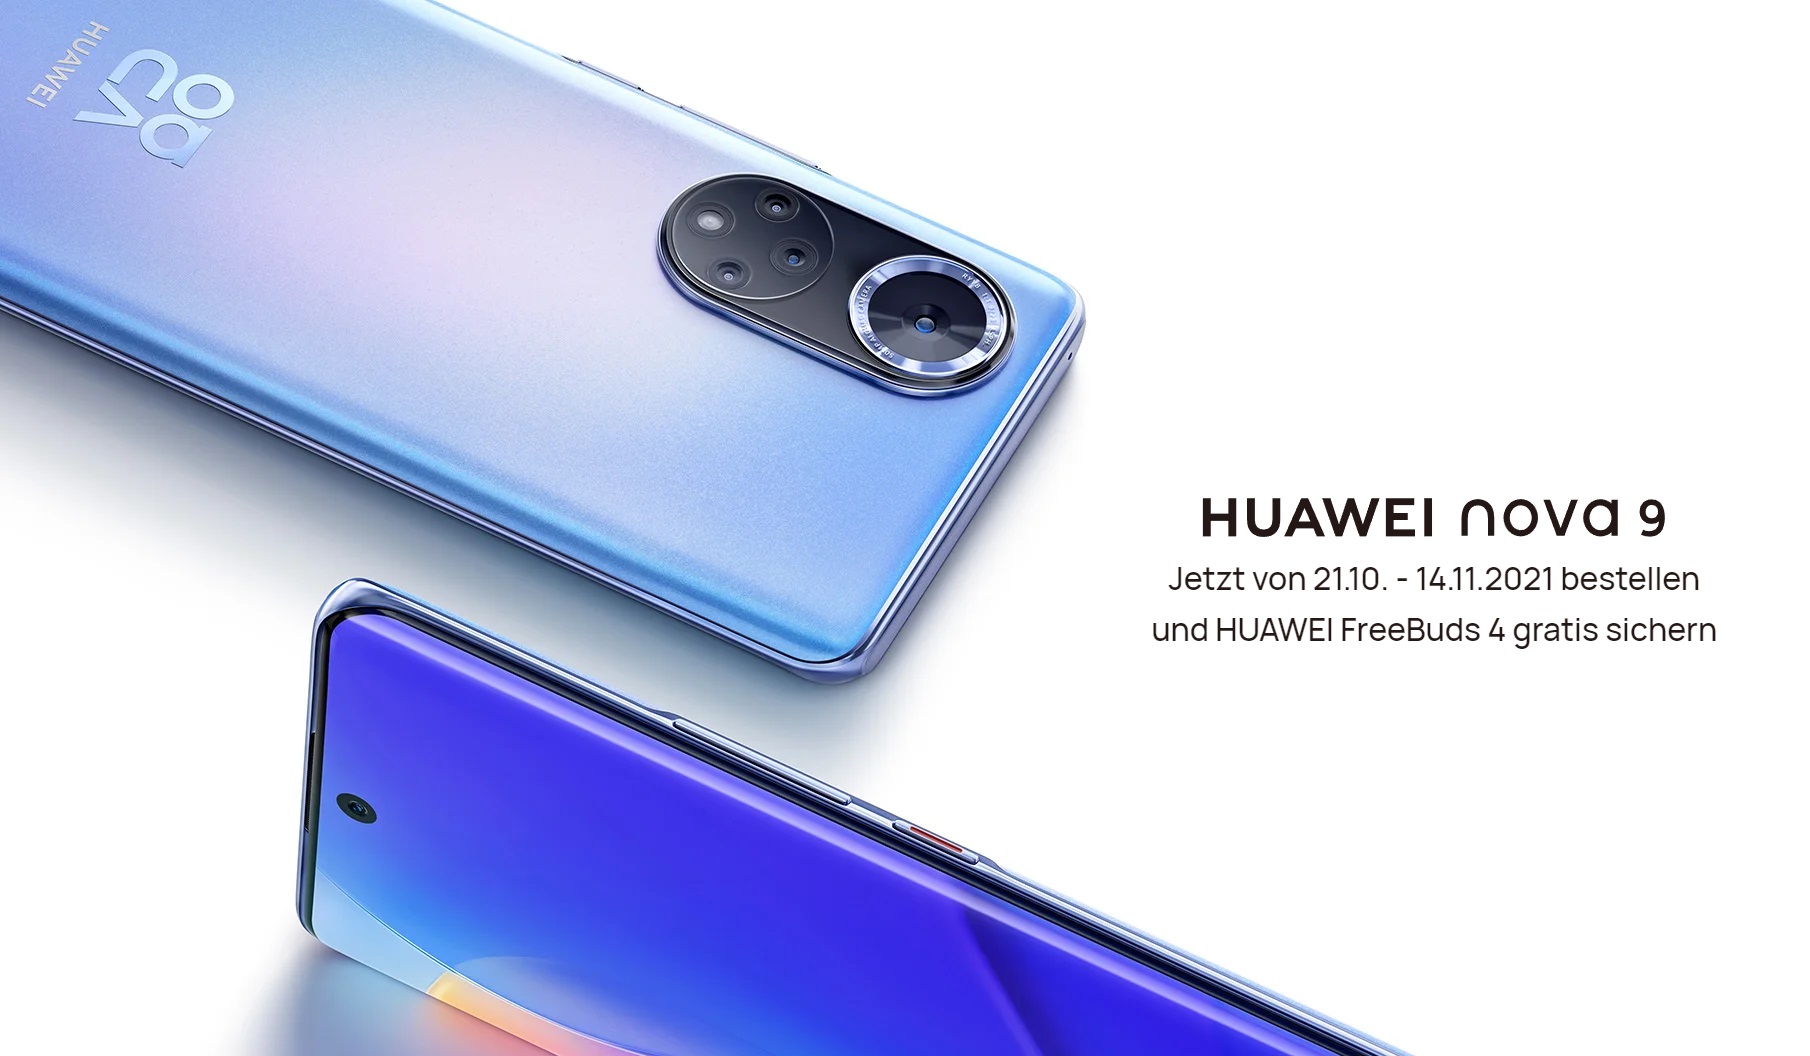 Huawei nova 9 en Europa - Snapdragon 778G sin 5G, cámara de 50MP y pantalla OLED de 120Hz por 499 euros